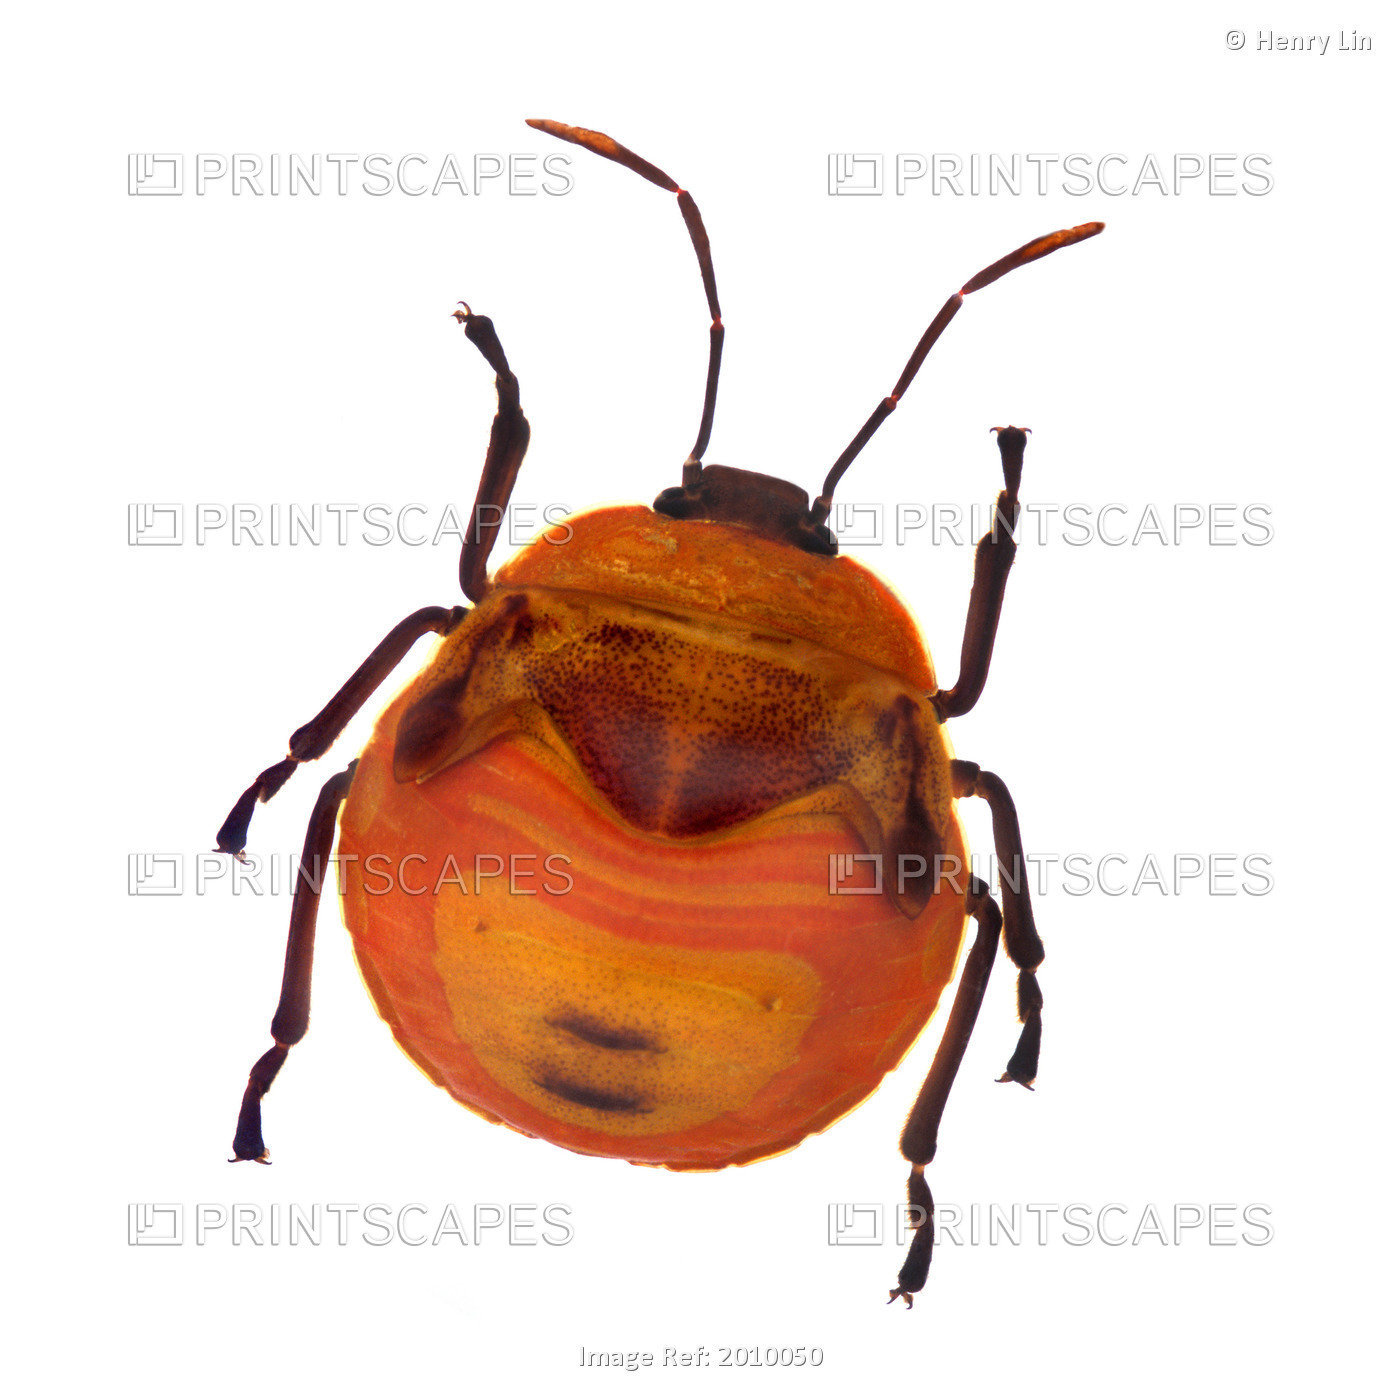 Henry Lin; Orange Stink Beetle